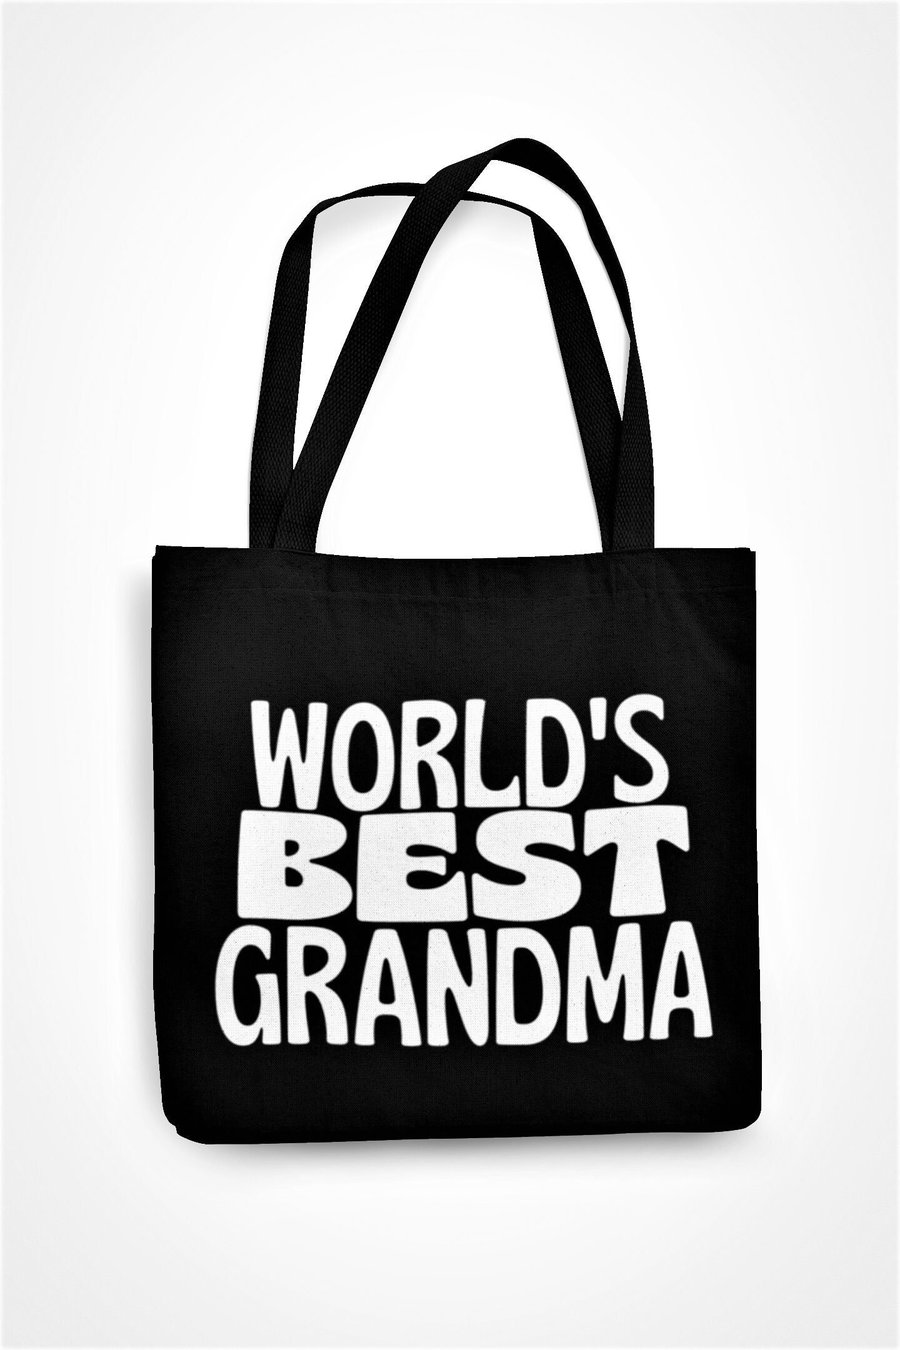 World's Best Grandma Tote Bag Eco Friendly Shopping Bag Cute Gift Present